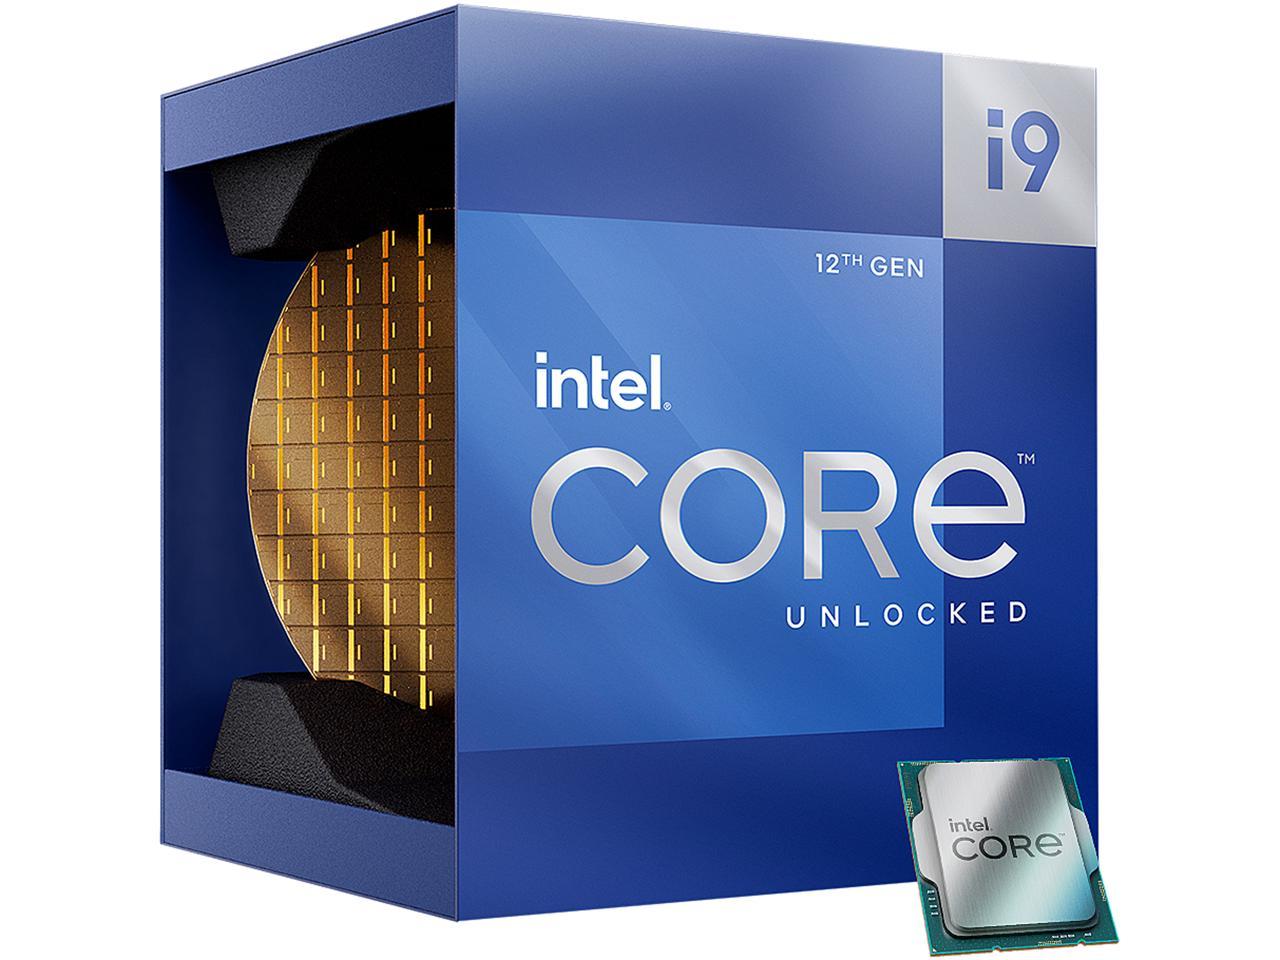 PC/タブレット PCパーツ Intel Core i9-12900K - Core i9 12th Gen Alder Lake 16-Core (8P+8E) 3.2 GHz  LGA 1700 125W Intel UHD Graphics 770 Desktop Processor - BX8071512900K